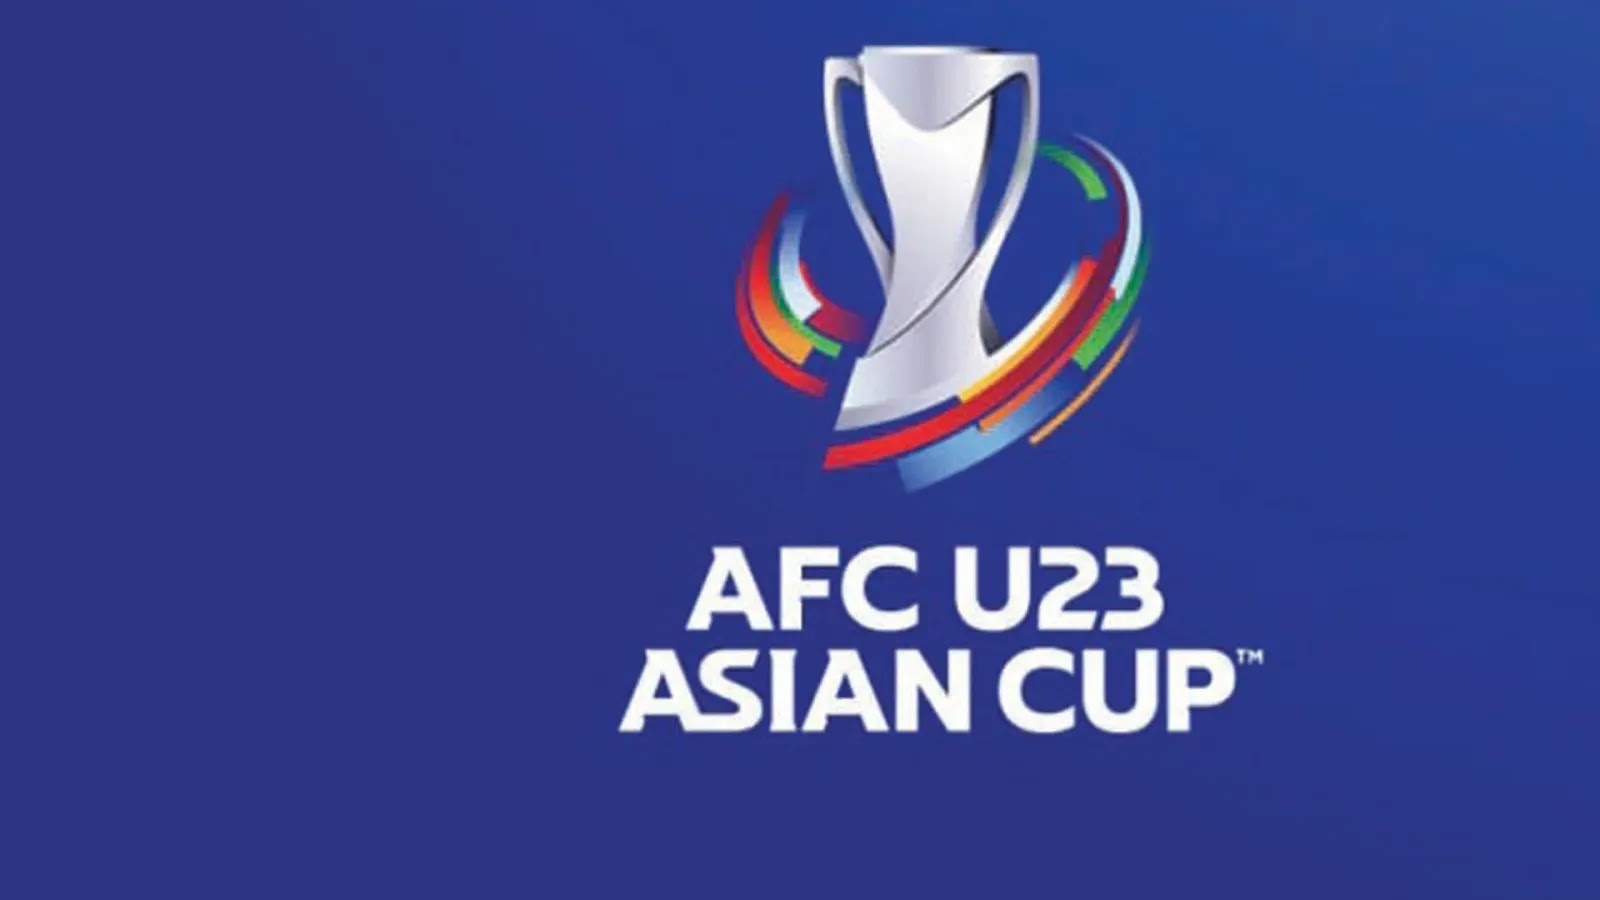    مشاهدة مباراة ايران واوزبكستان بث مباشر اليوم 07-06-2022 كأس اسيا الأولمبية موقع عالم الكورة لبث المباريات